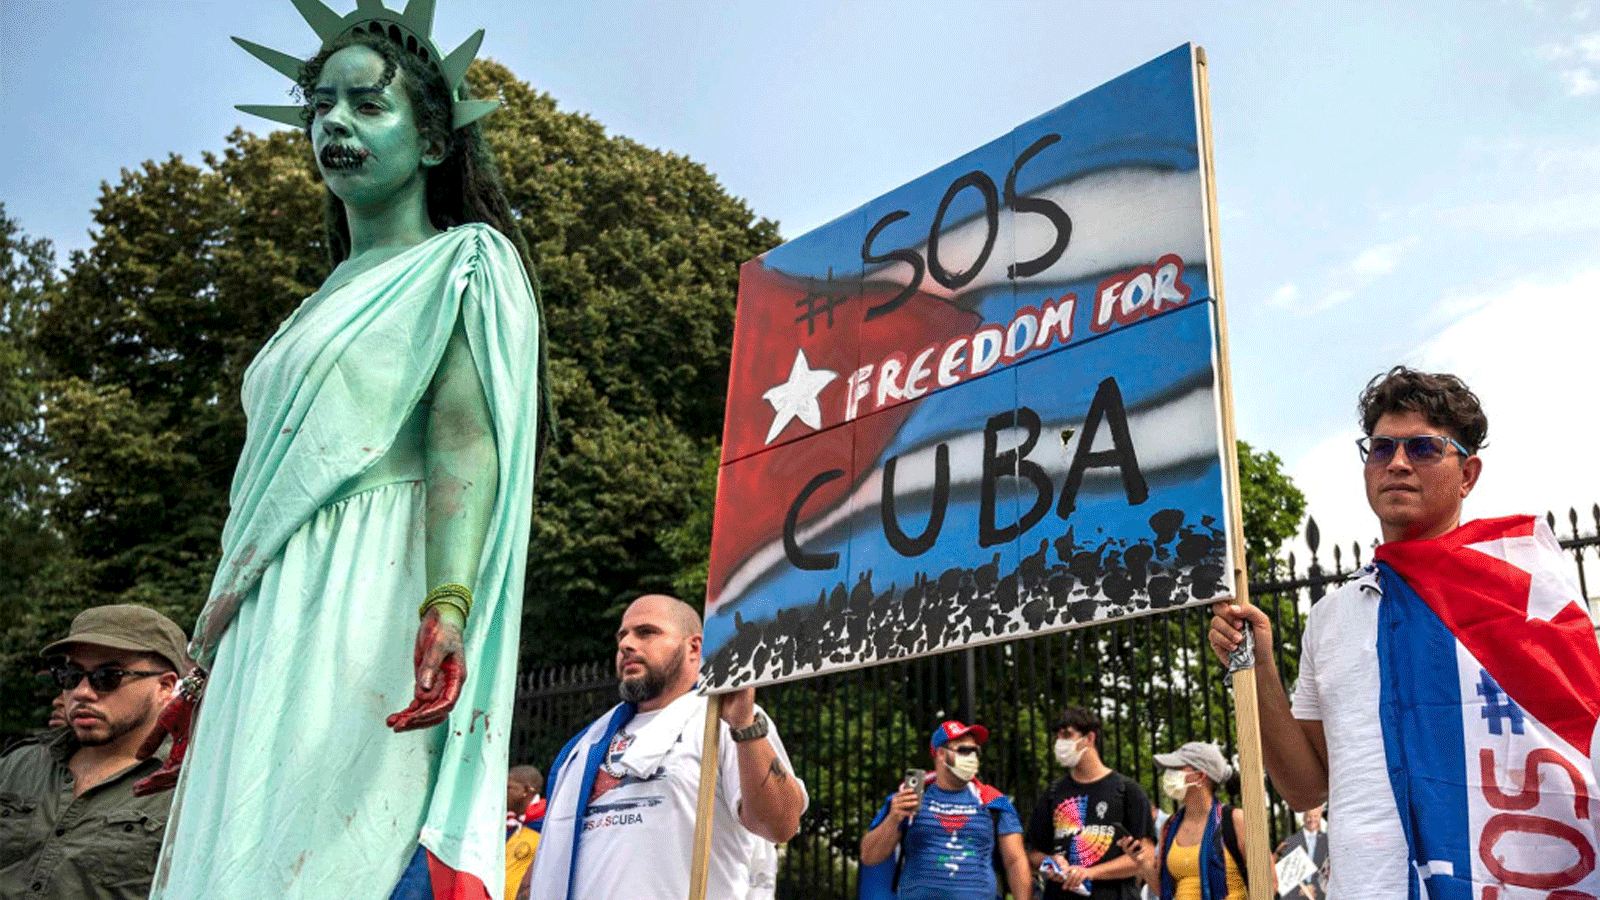 متظاهر يرتدي زي تمثال الحرية بينما يرتدي آخرون الأعلام الكوبية خلال مظاهرة أمام البيت الأبيض في واشنطن العاصمة، في 25 تموز/يوليو 2021.